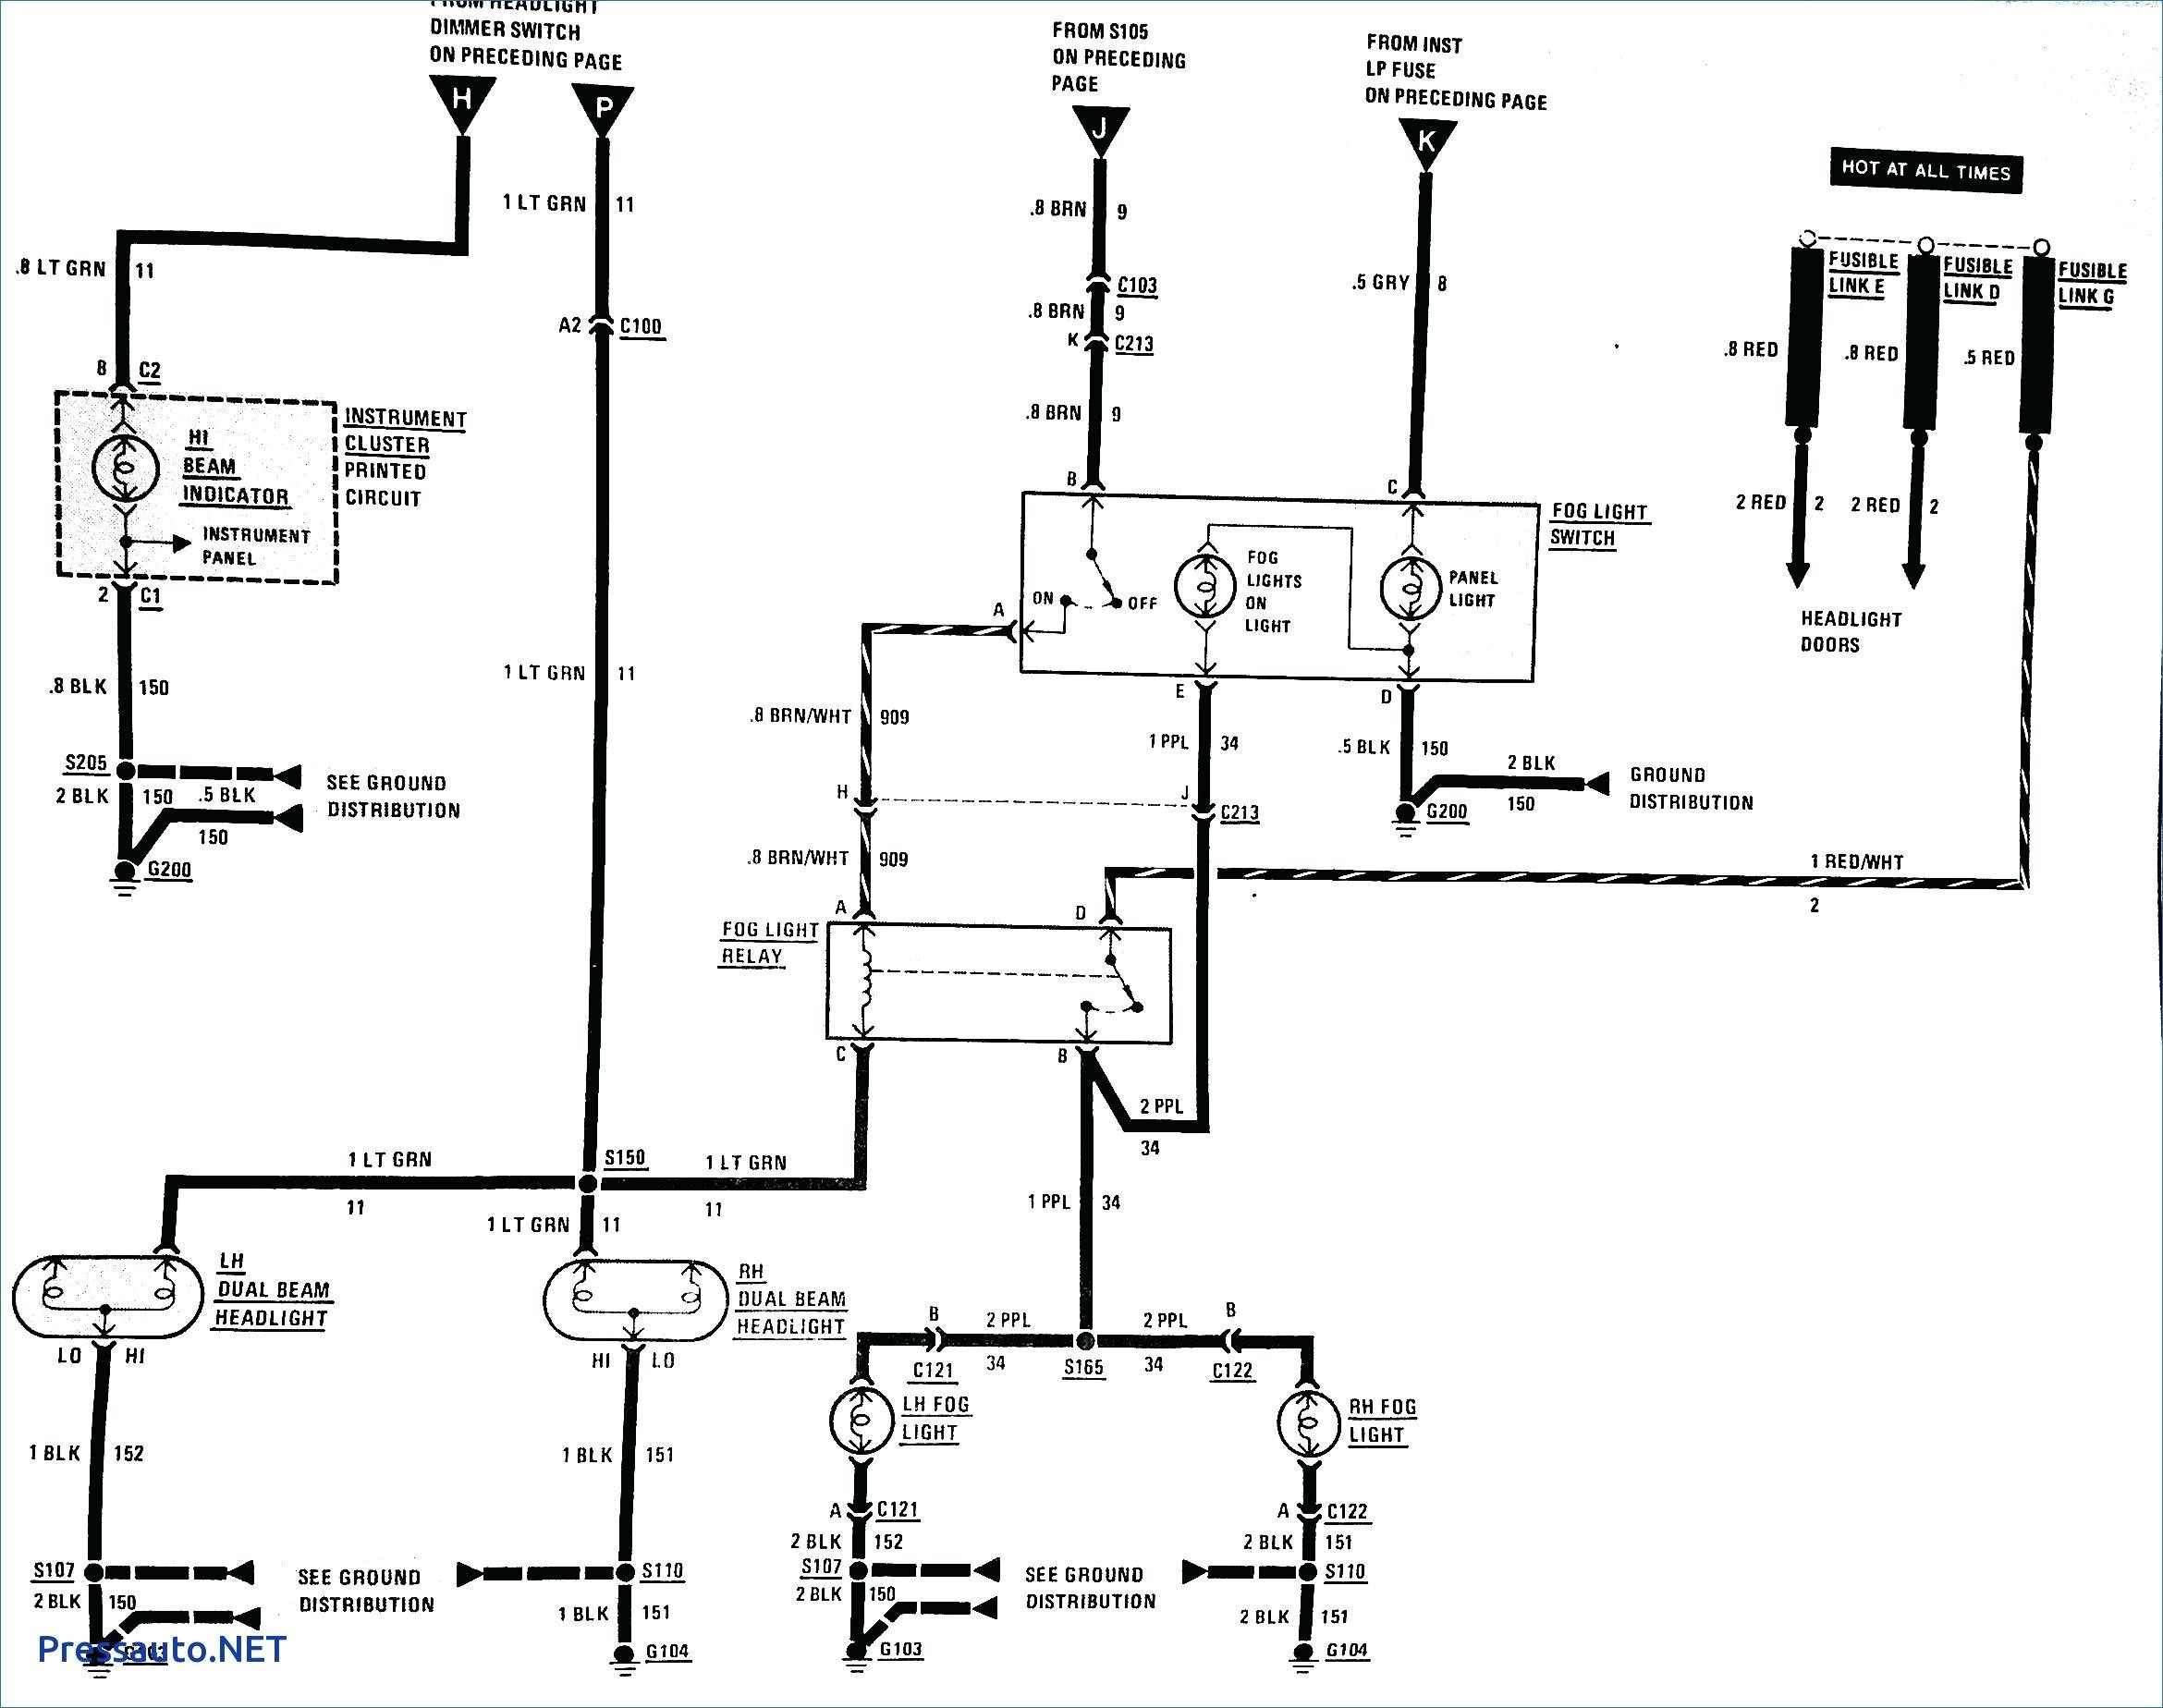 Auto Bilge Pump Wiring Diagram | Wiring Library - Rule Automatic Bilge Pump Wiring Diagram